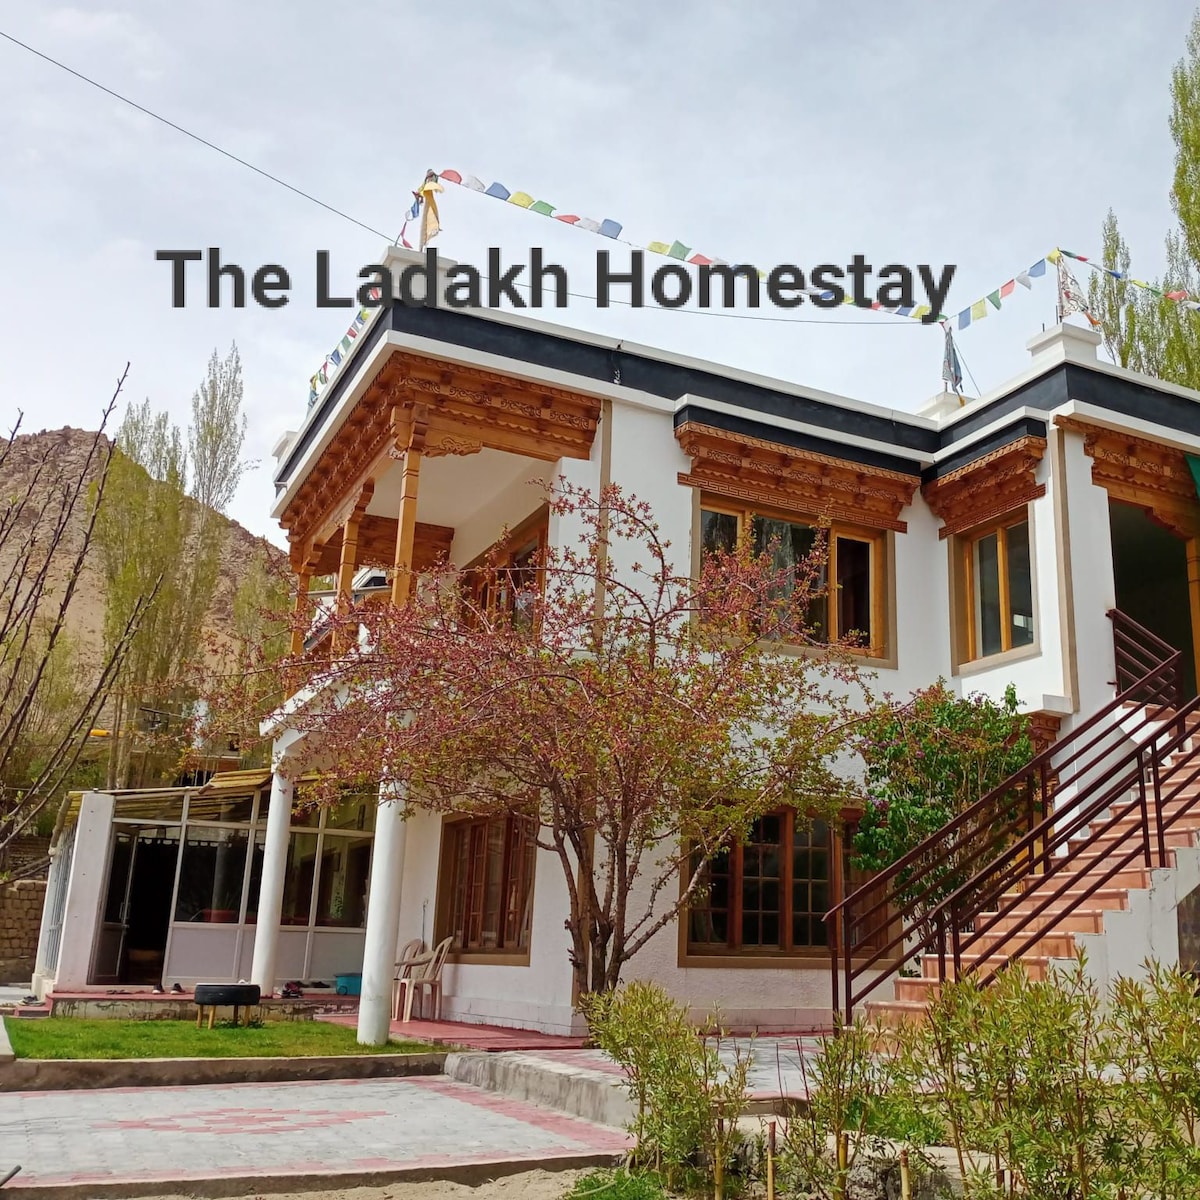 The Ladakh Homestay